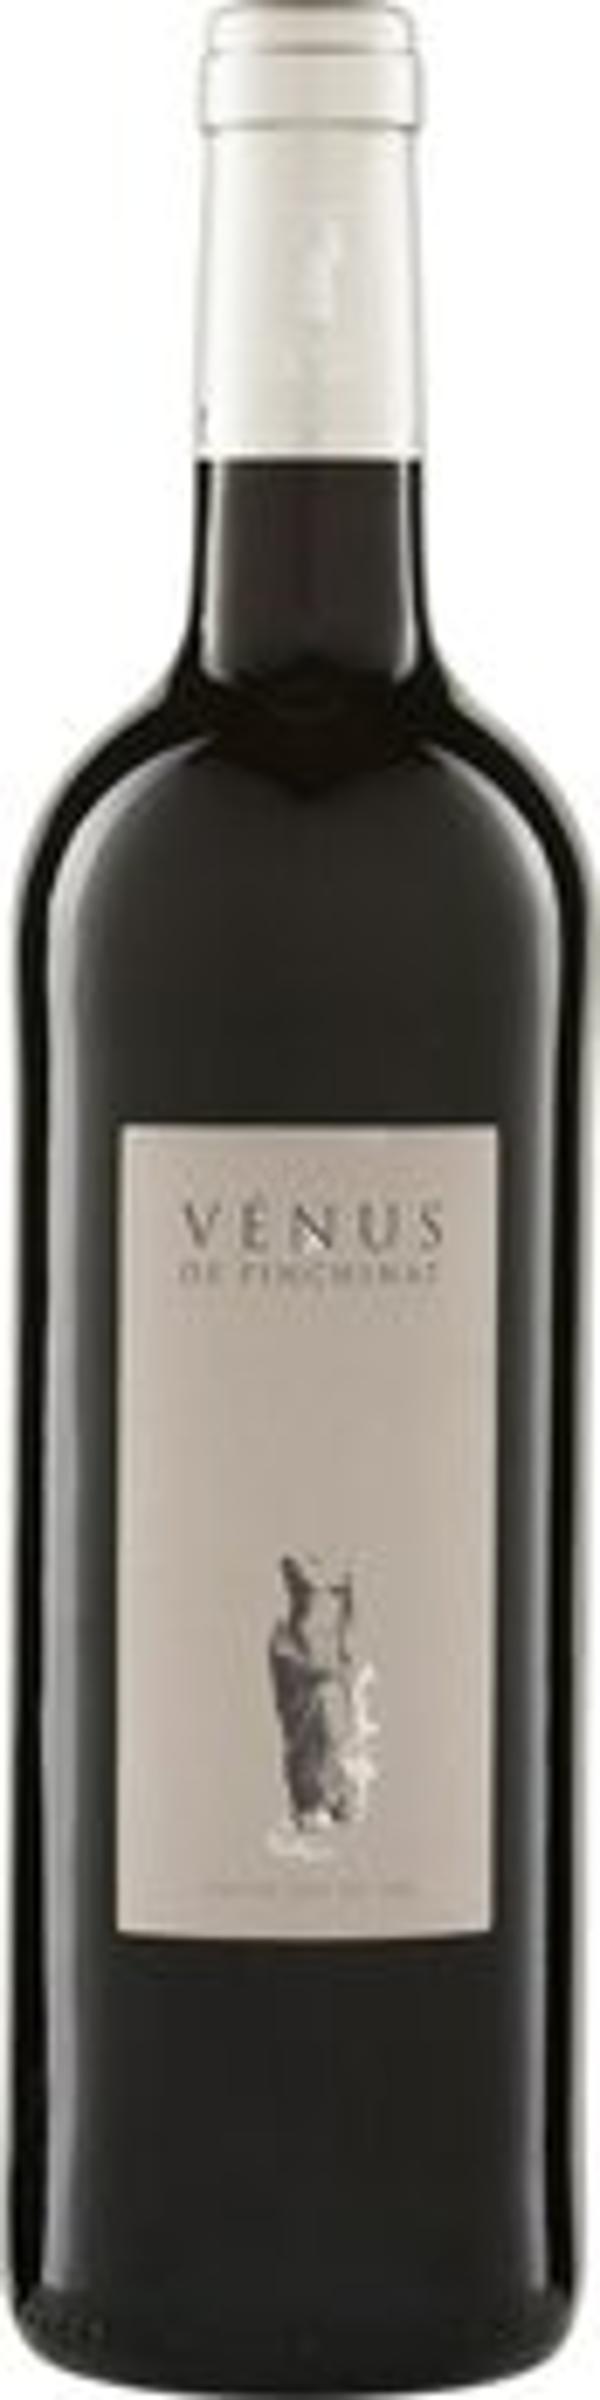 Produktfoto zu Venus' Rouge IGP, Rotwein trocken 0,75l